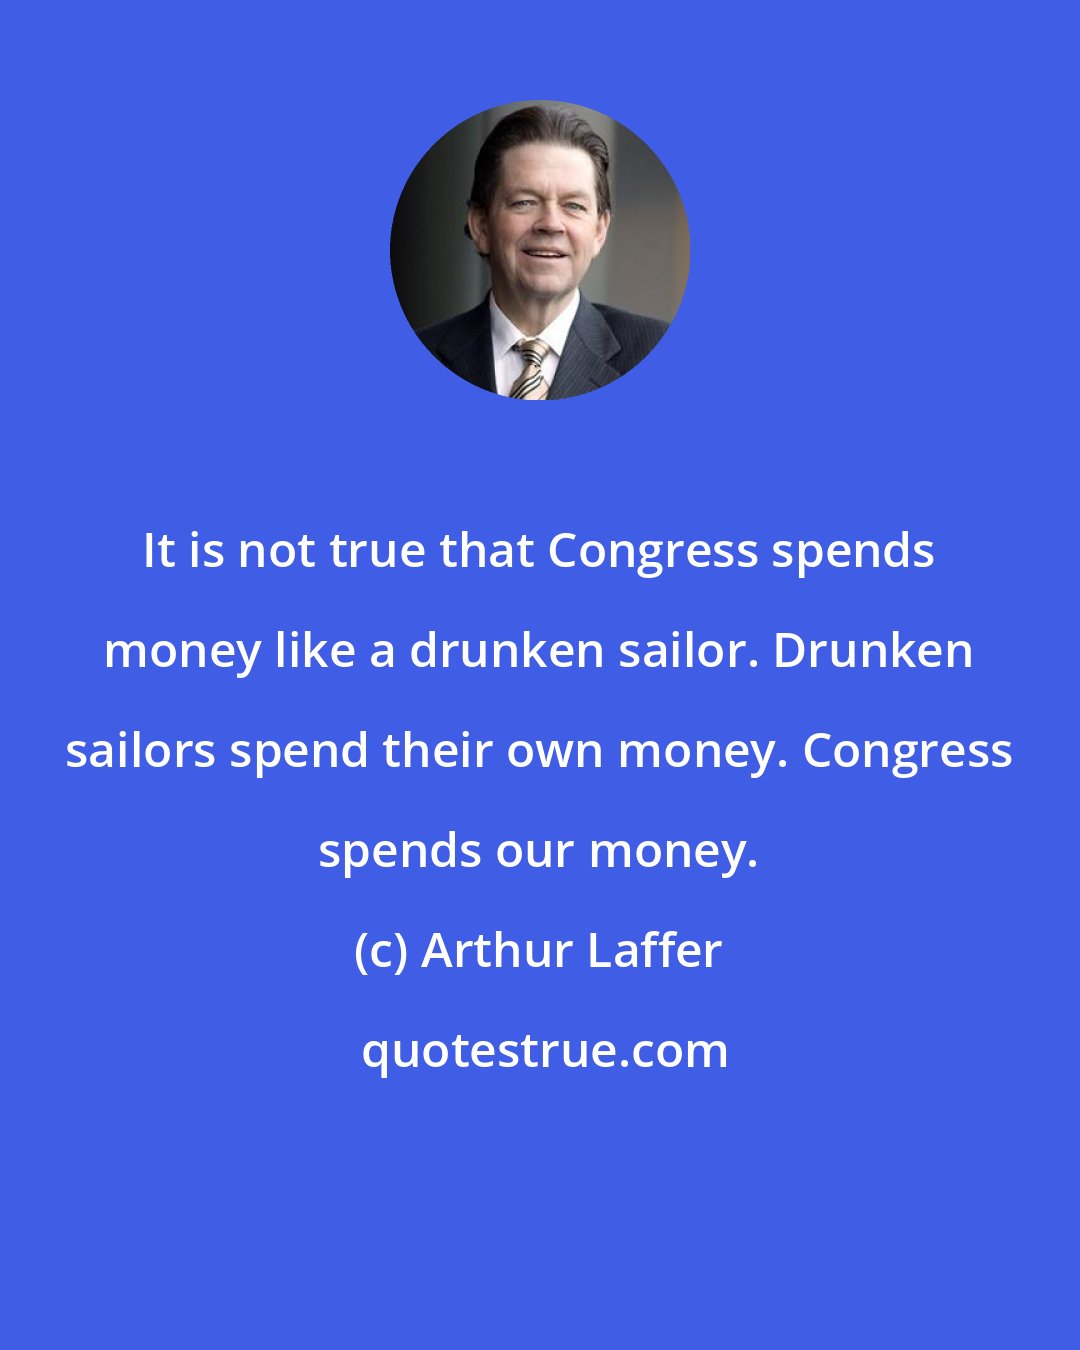 Arthur Laffer: It is not true that Congress spends money like a drunken sailor. Drunken sailors spend their own money. Congress spends our money.